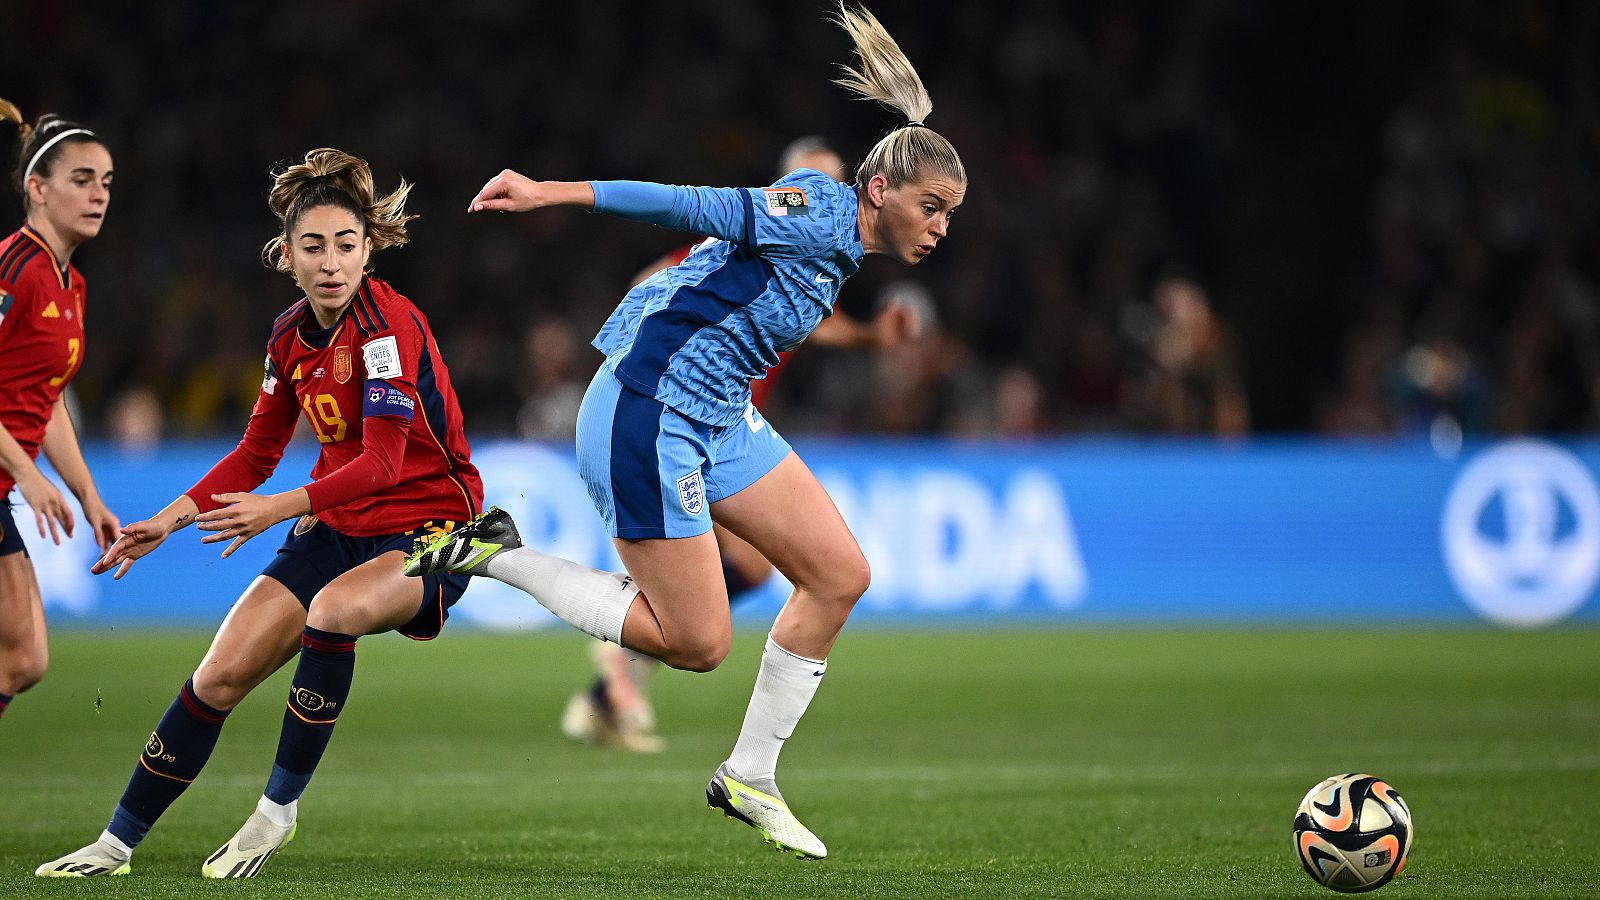 Tiro al larguero de Lauren Hemp, España - Inglaterra, final Mundial Femenino